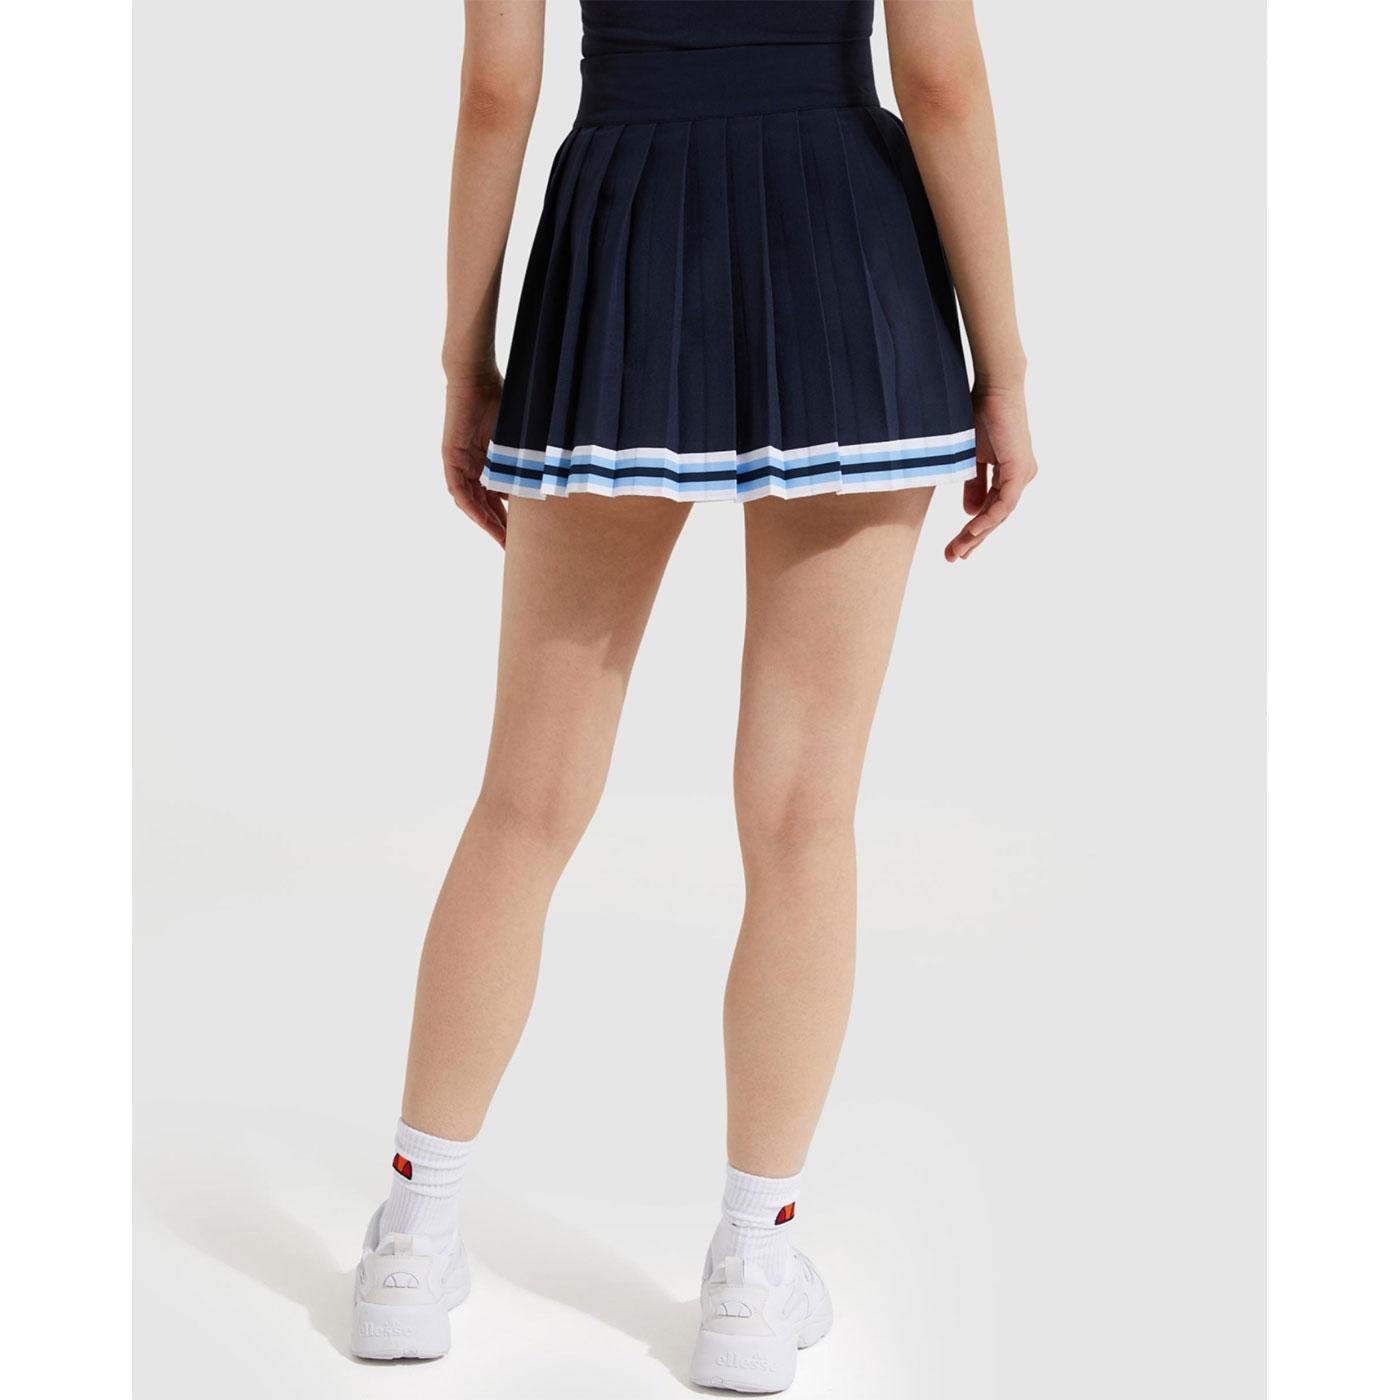 ELLESSE 'Skate' Retro Pleated Tennis Mini Skirt in Navy